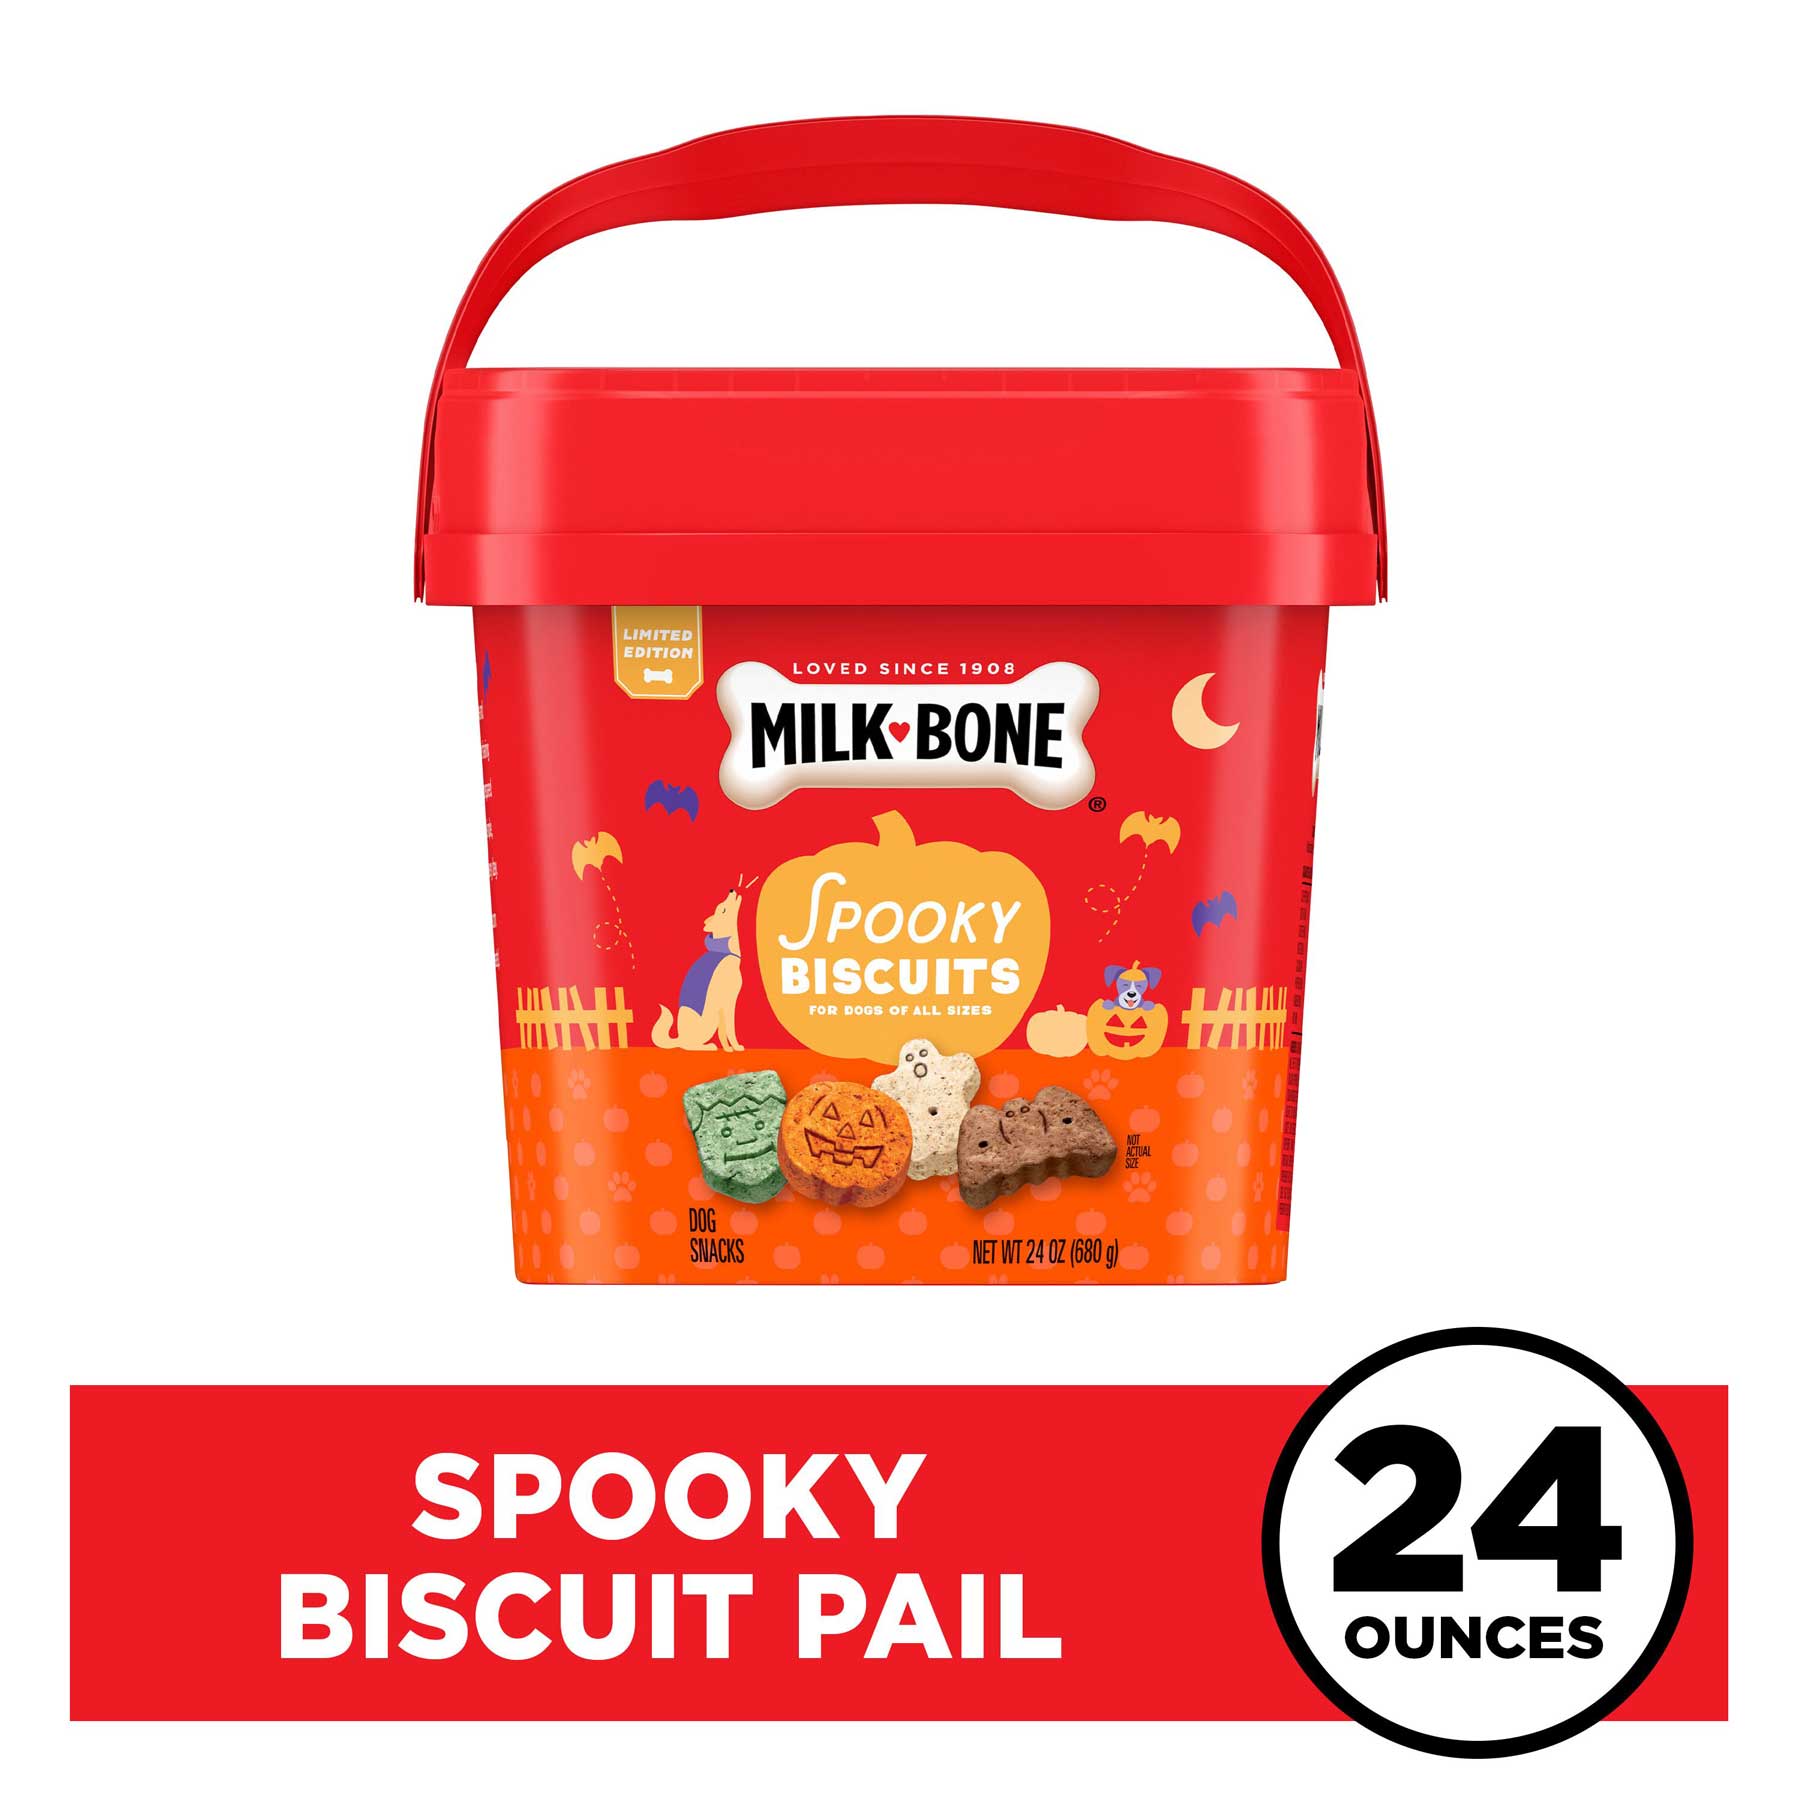 Milk-Bone Biscuit Spooky Pail Dog Treats, 24 Ounces